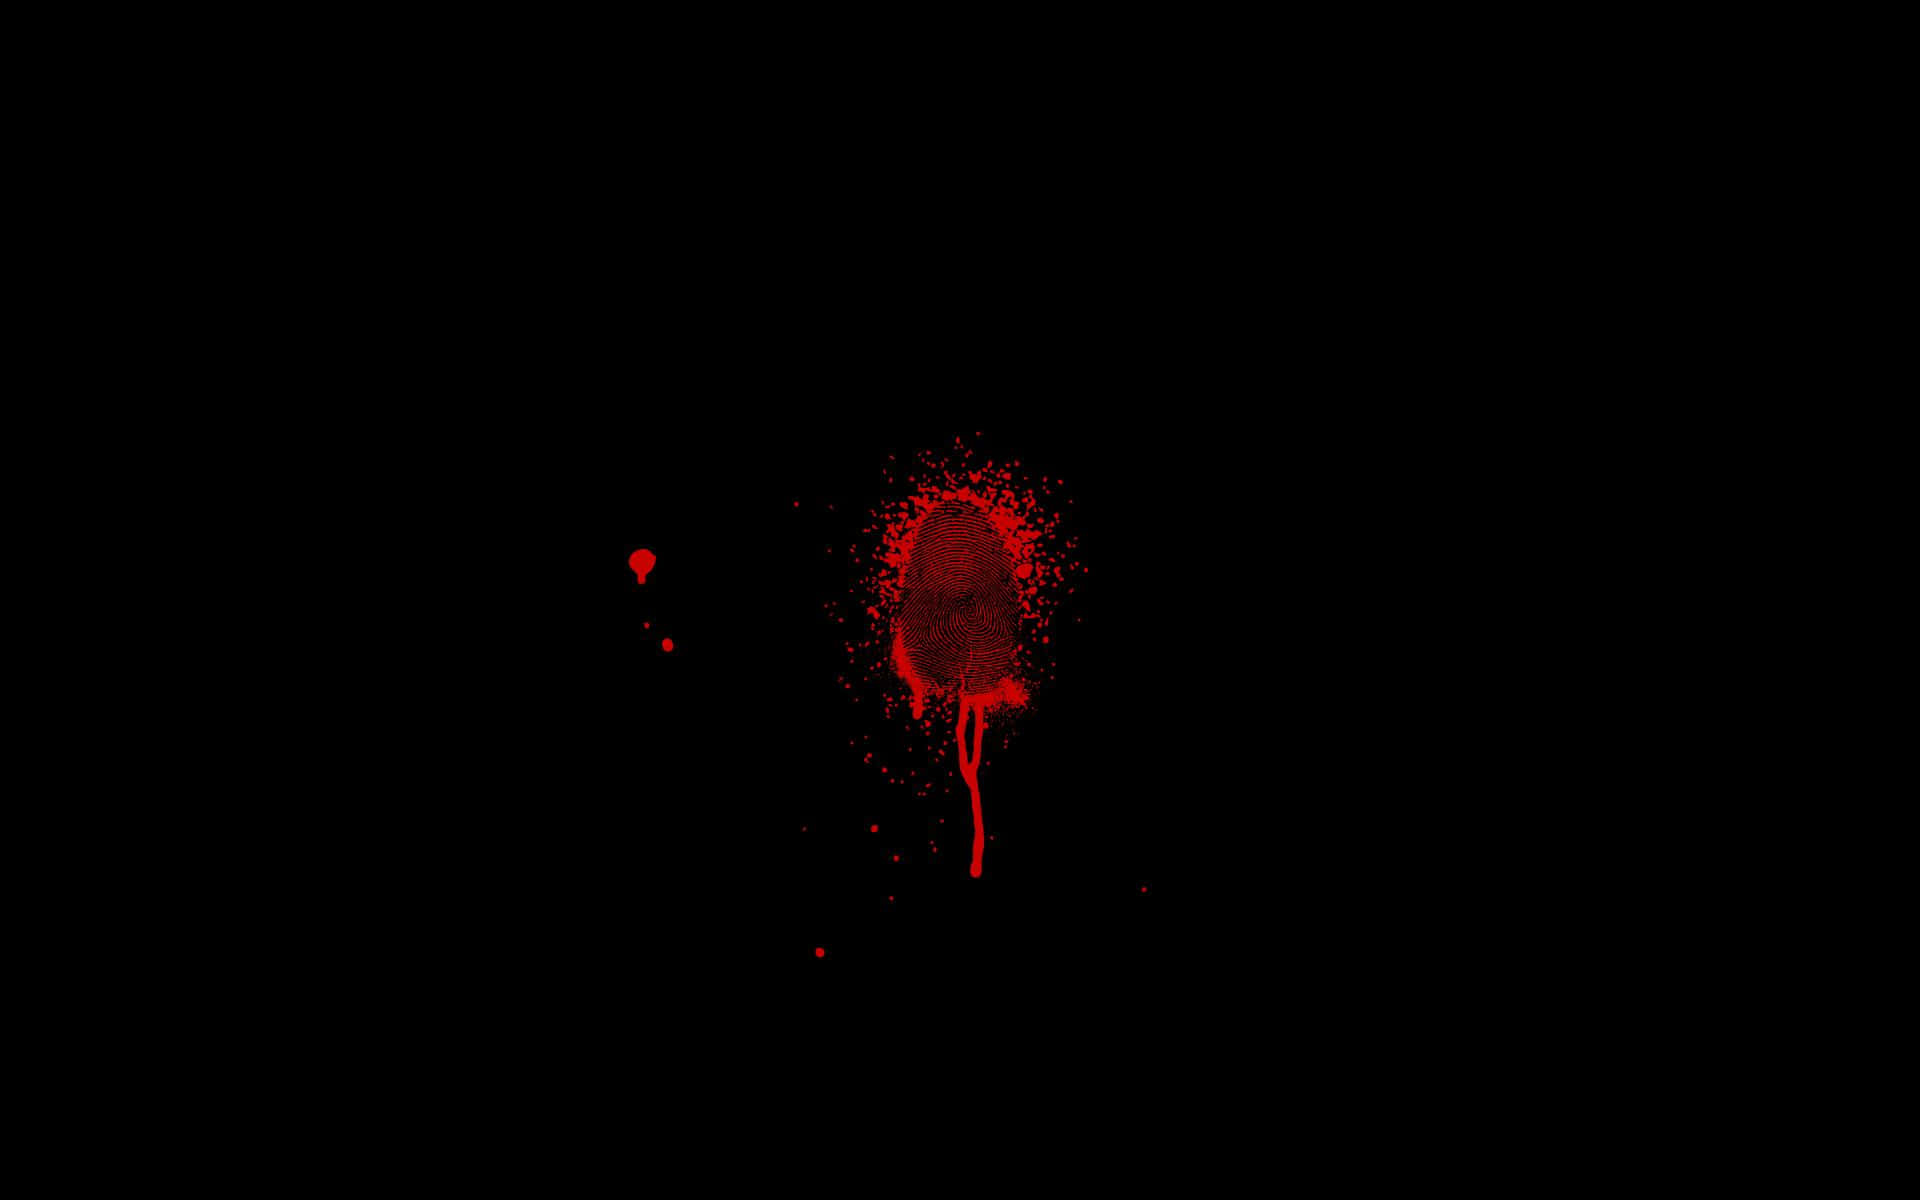 Blood Splatter On A Black Background